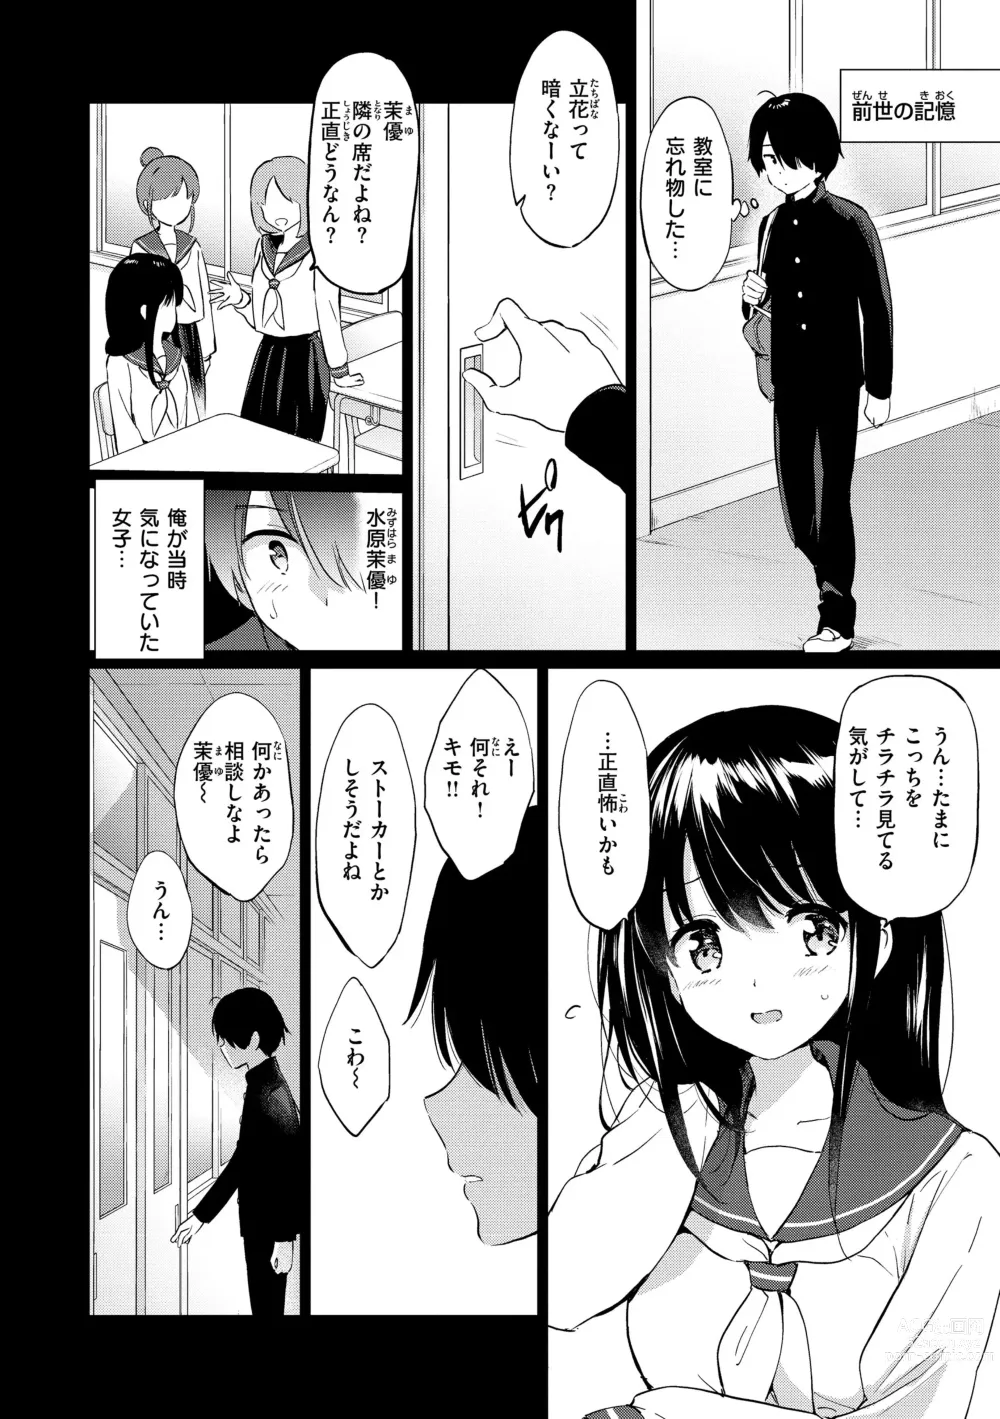 Page 10 of manga Mitsugetsu Paradise - Honeymoon Paradise